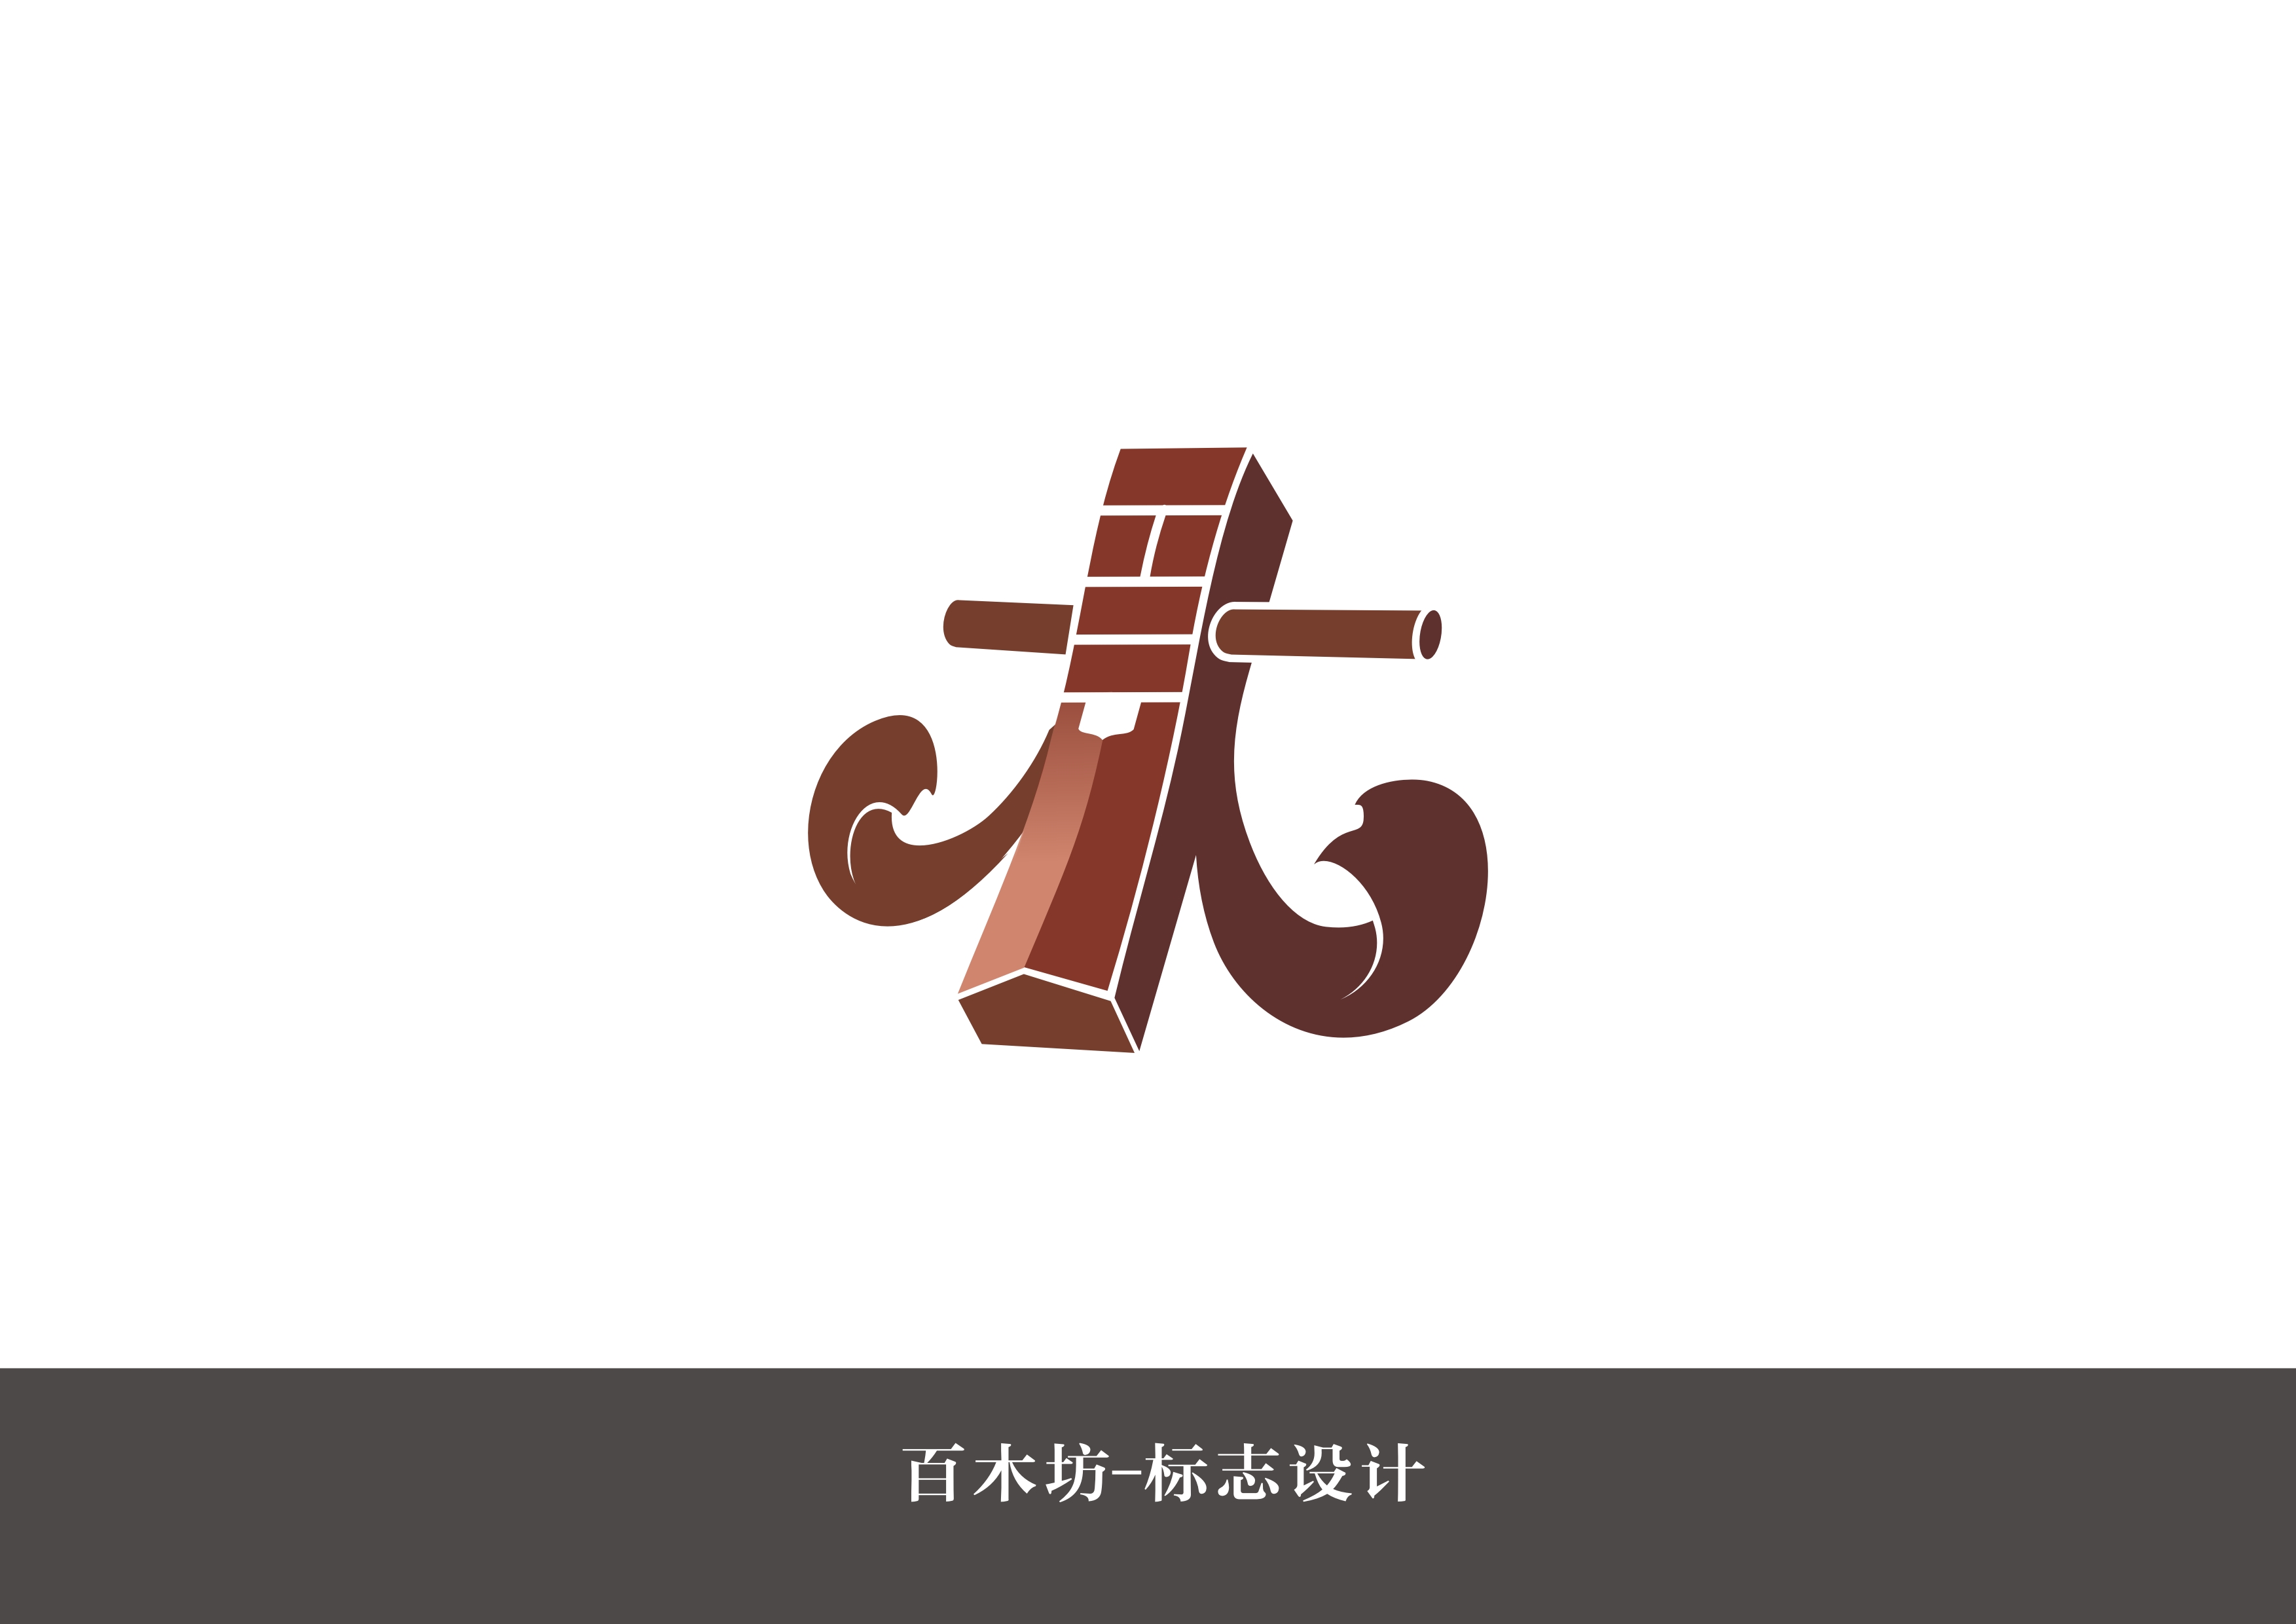 字体设计应用赛区                          项目介绍:北京百木坊是